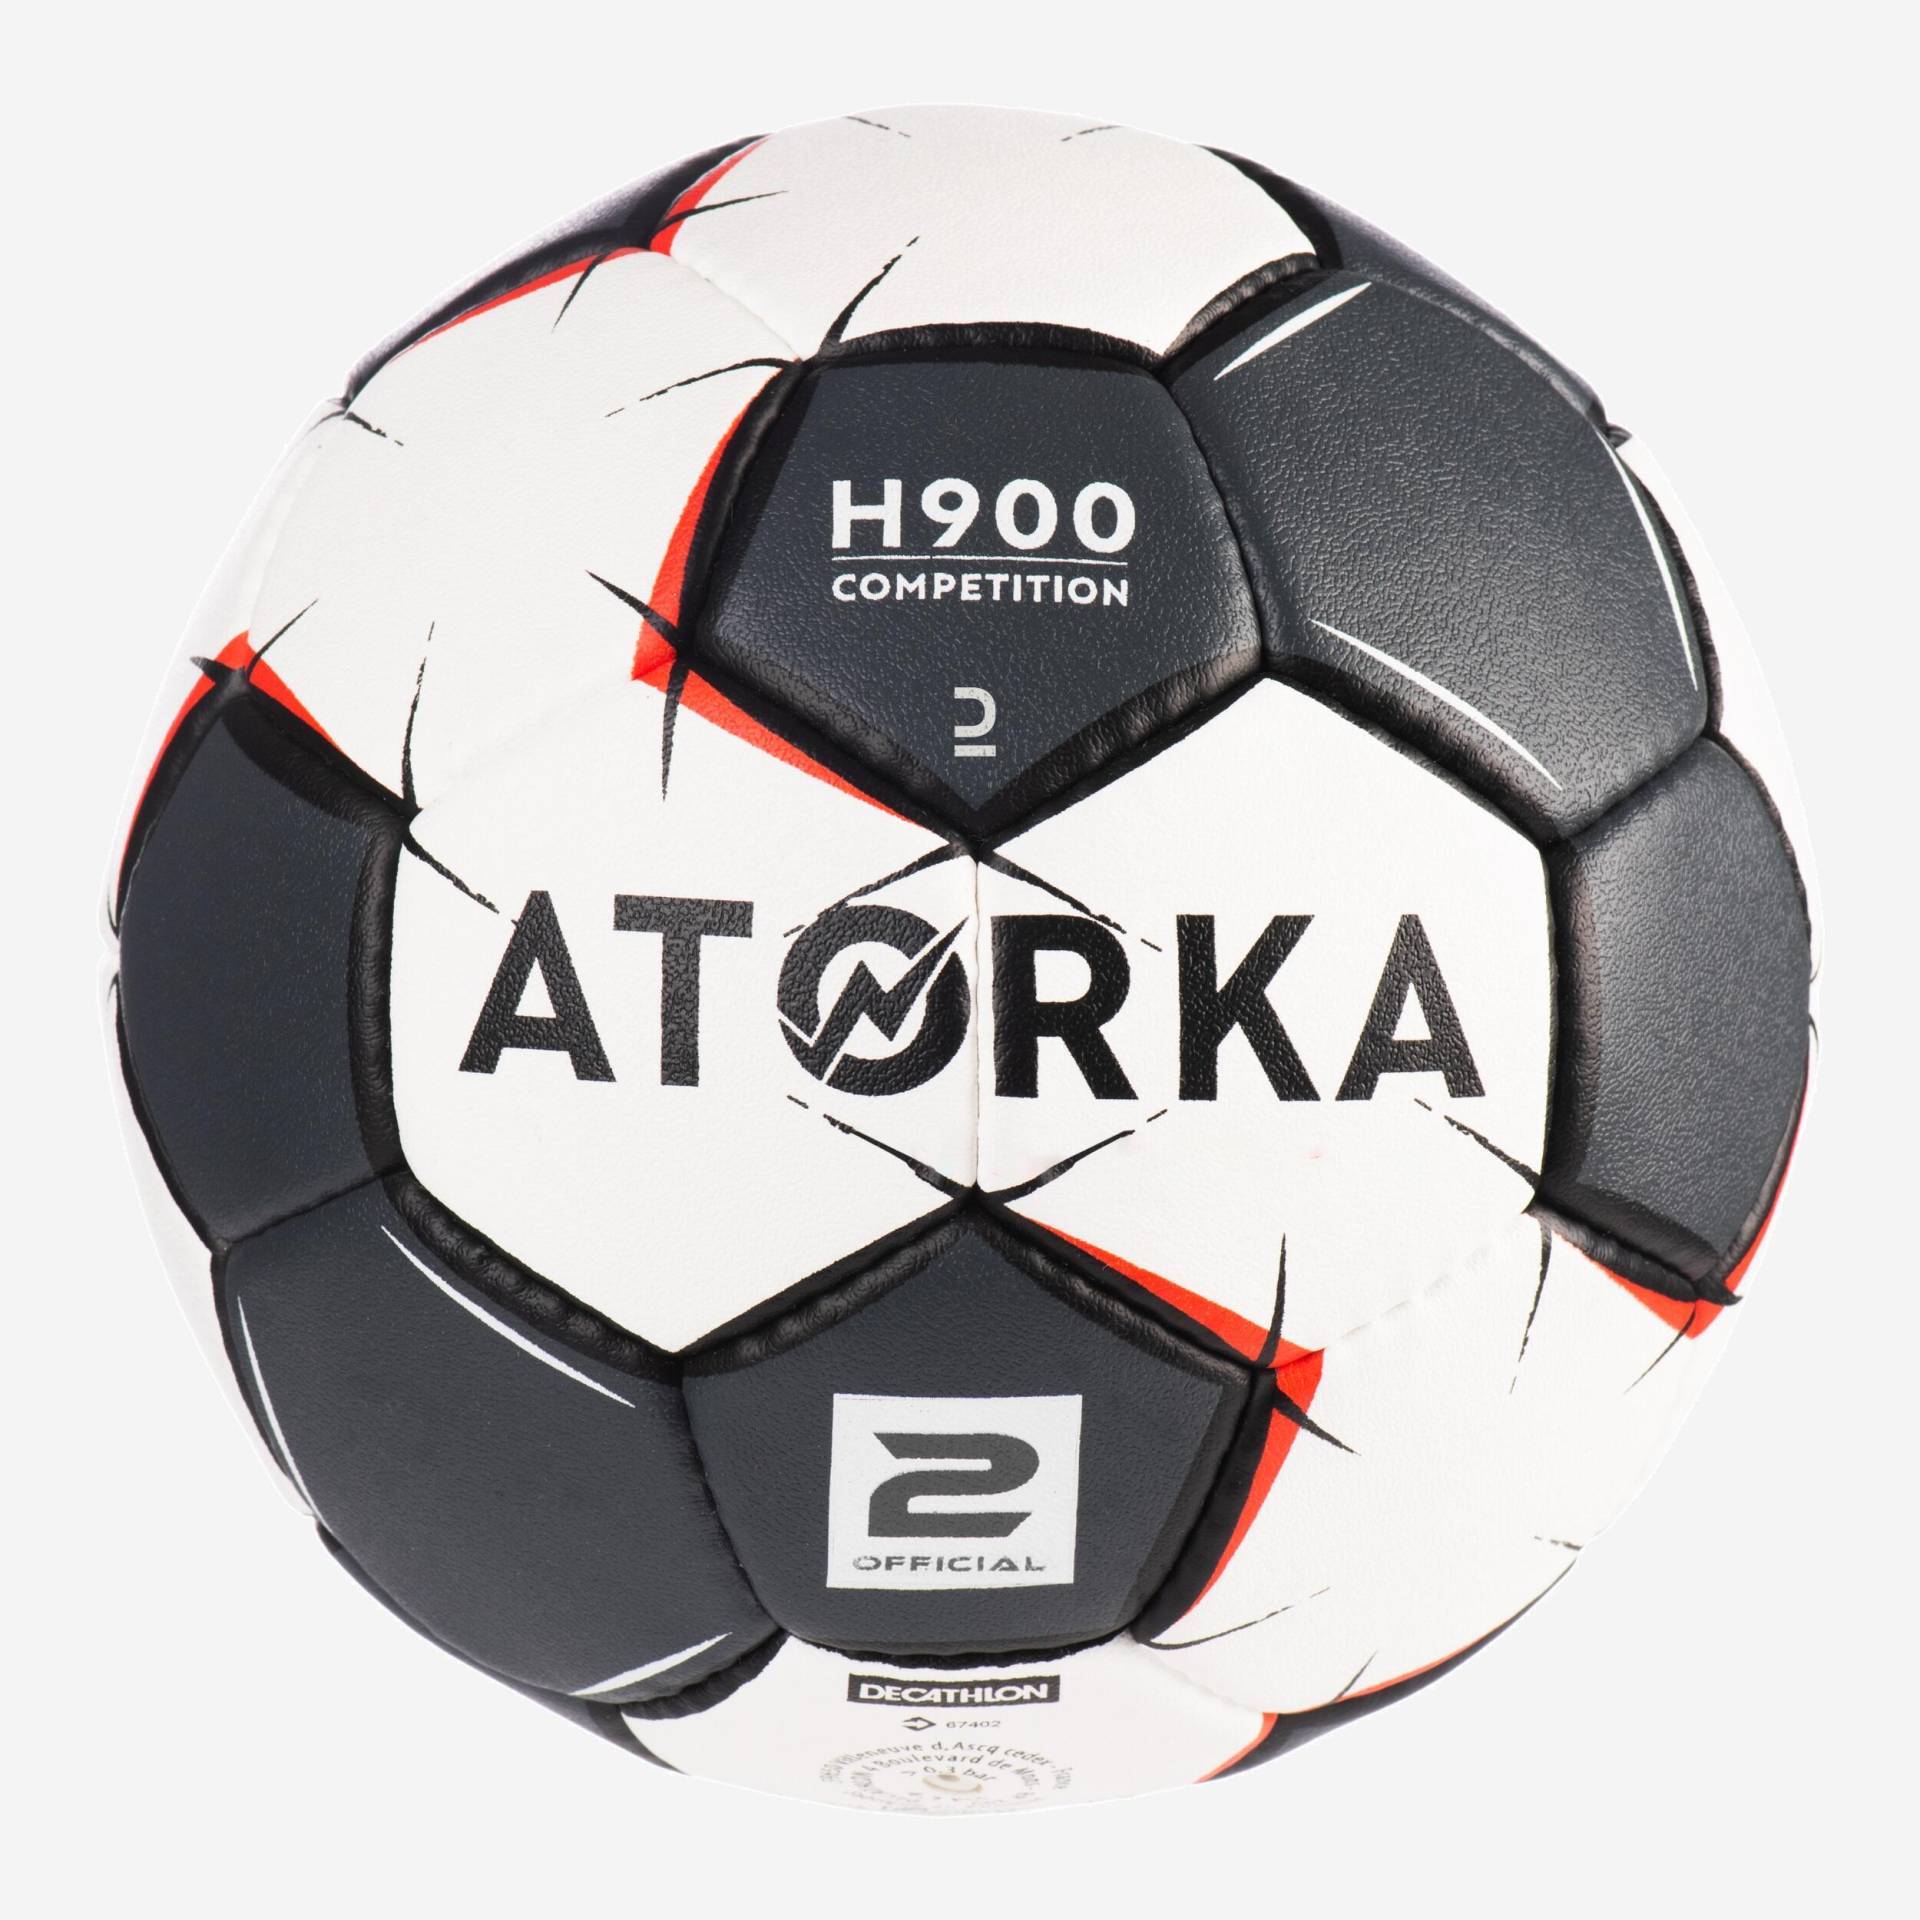 Handball Grösse 2 - H900 grau/weiss von ATORKA